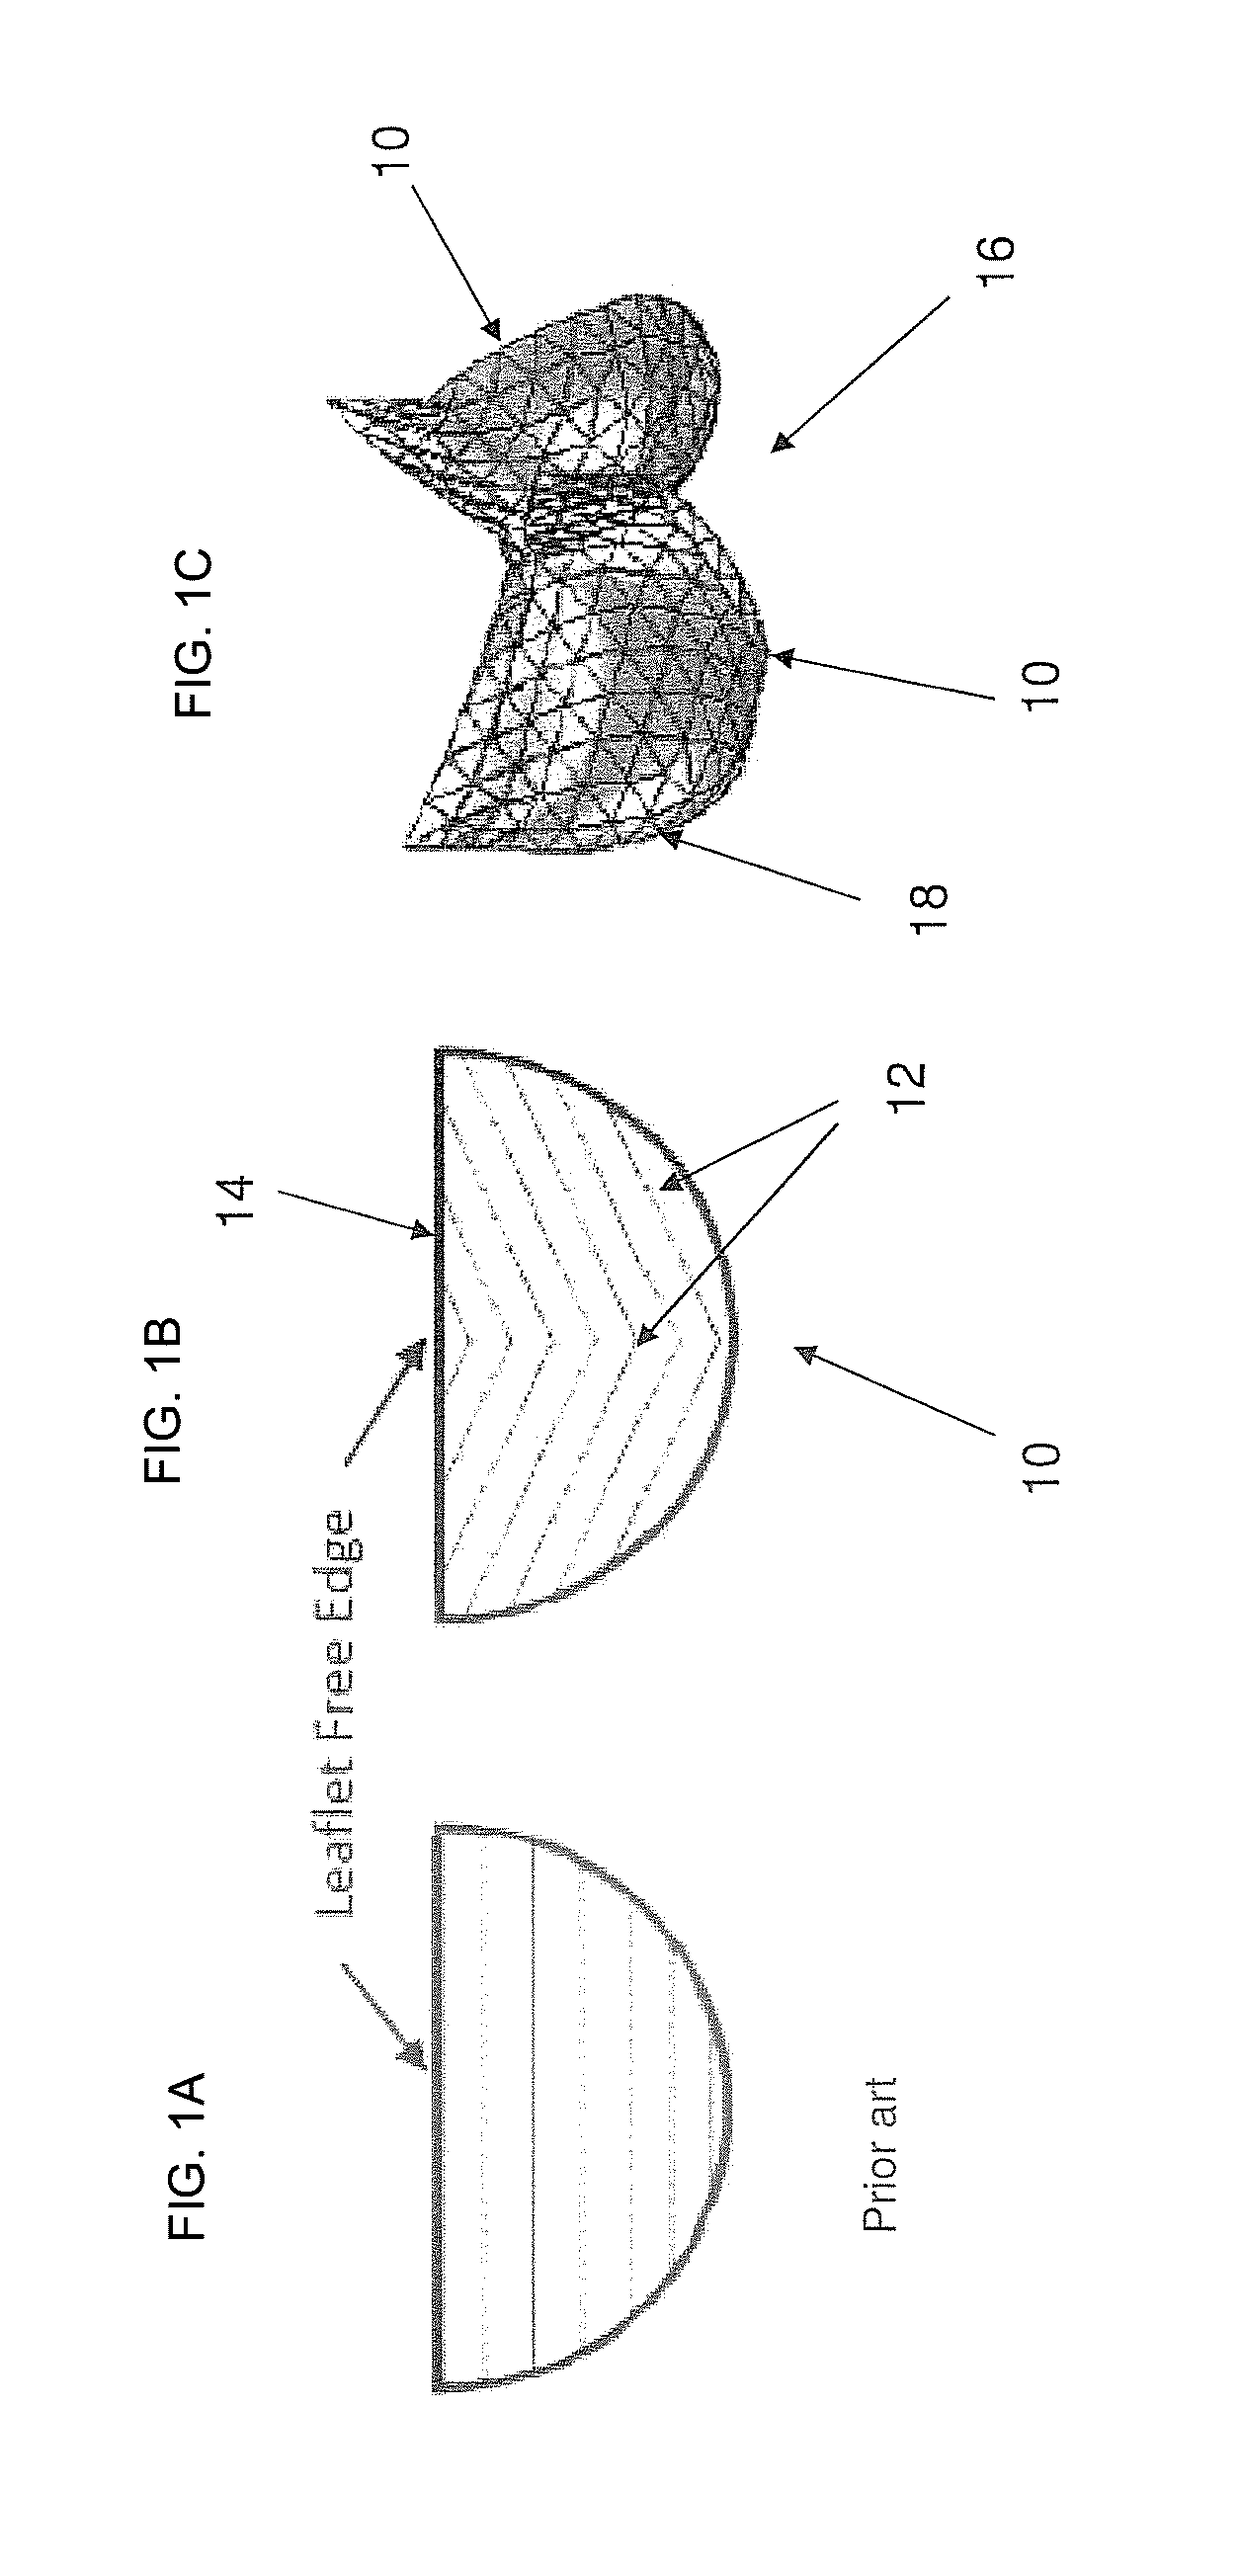 Curved fiber arrangement for prosthetic heart valves